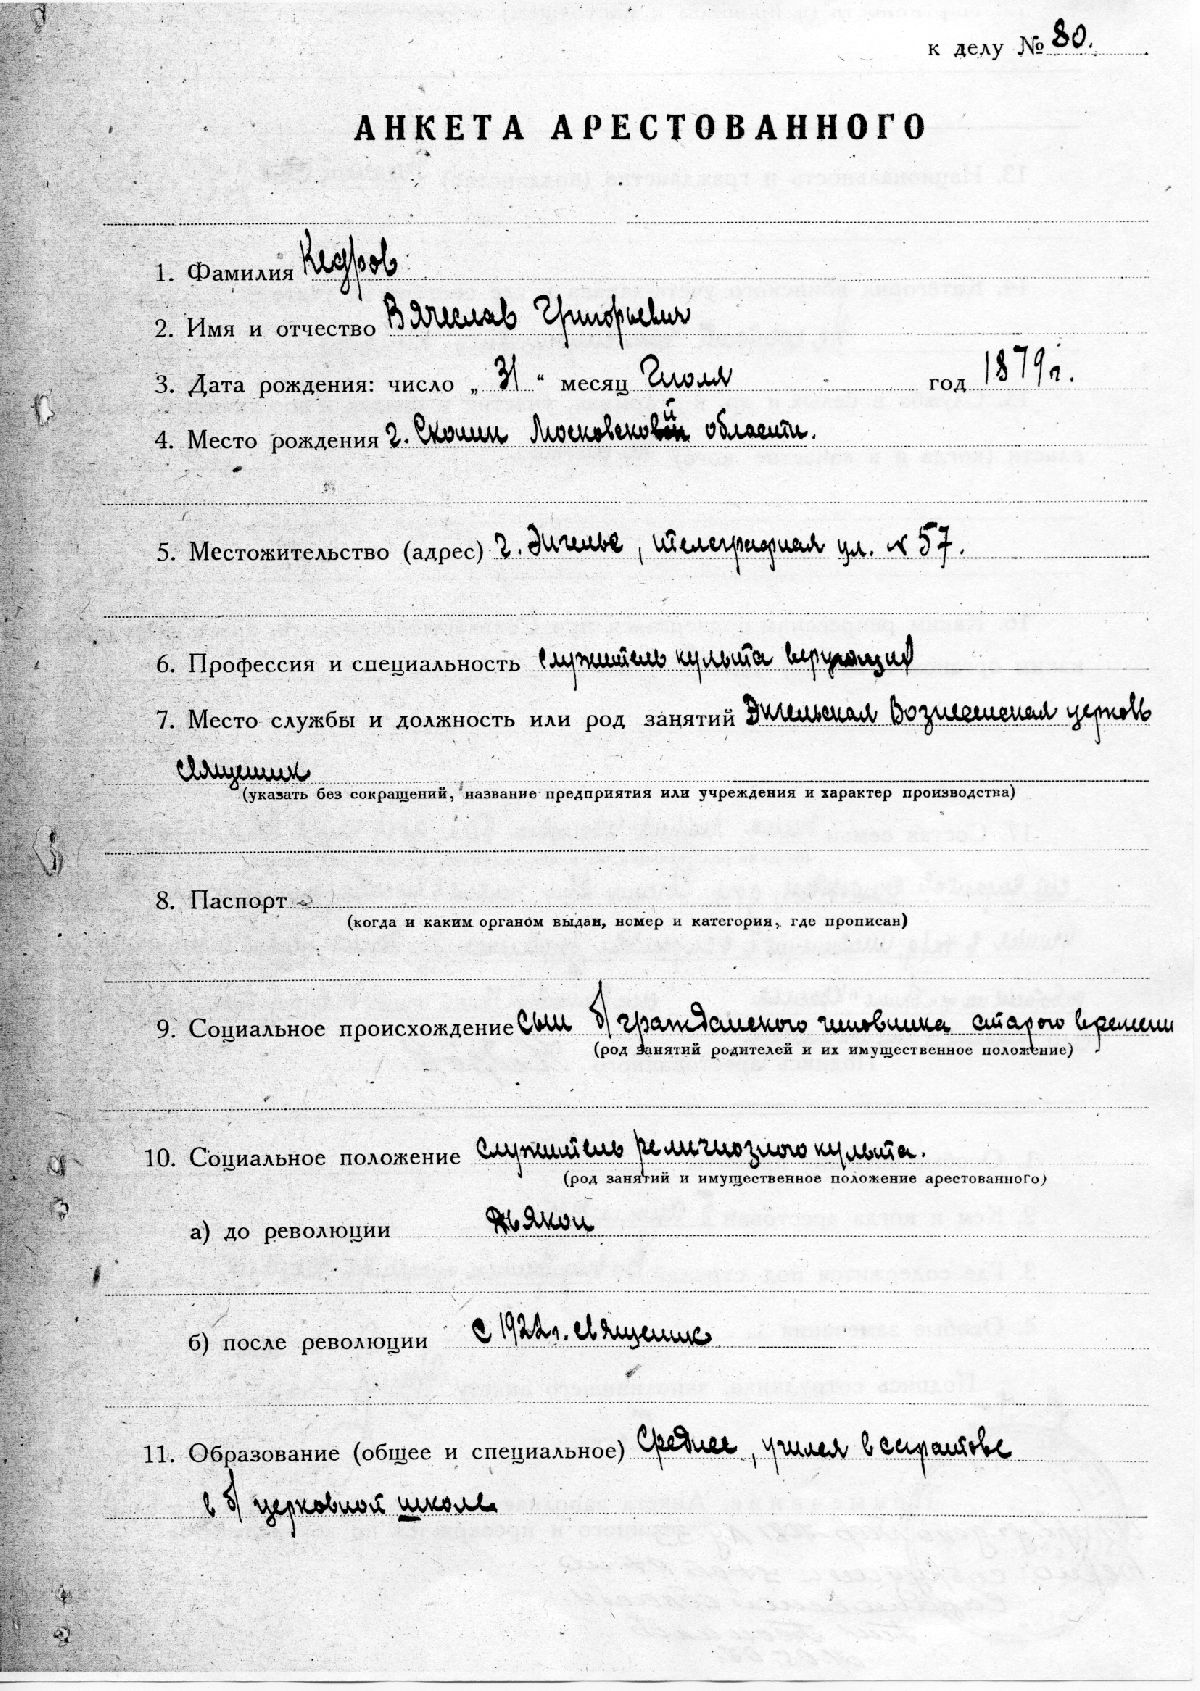 Дело 1935 г. Архив УФСБ по Саратовской области. Арх. № ОФ-7081(№ 80).